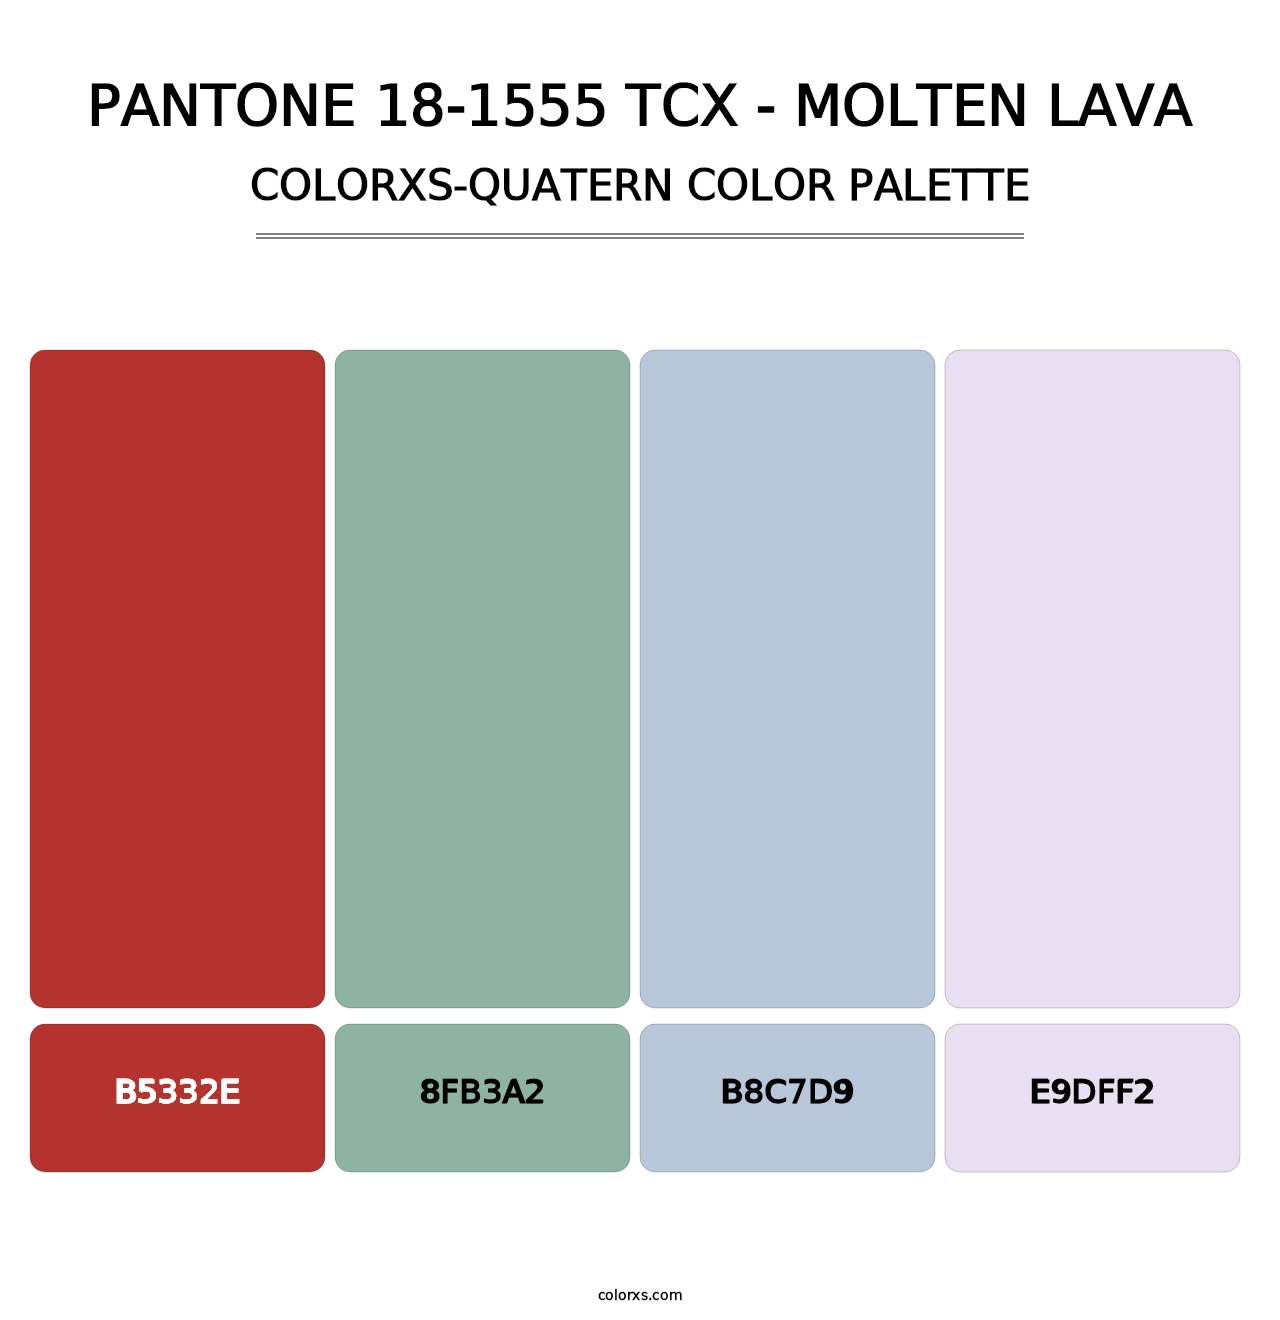 PANTONE 18-1555 TCX - Molten Lava - Colorxs Quatern Palette